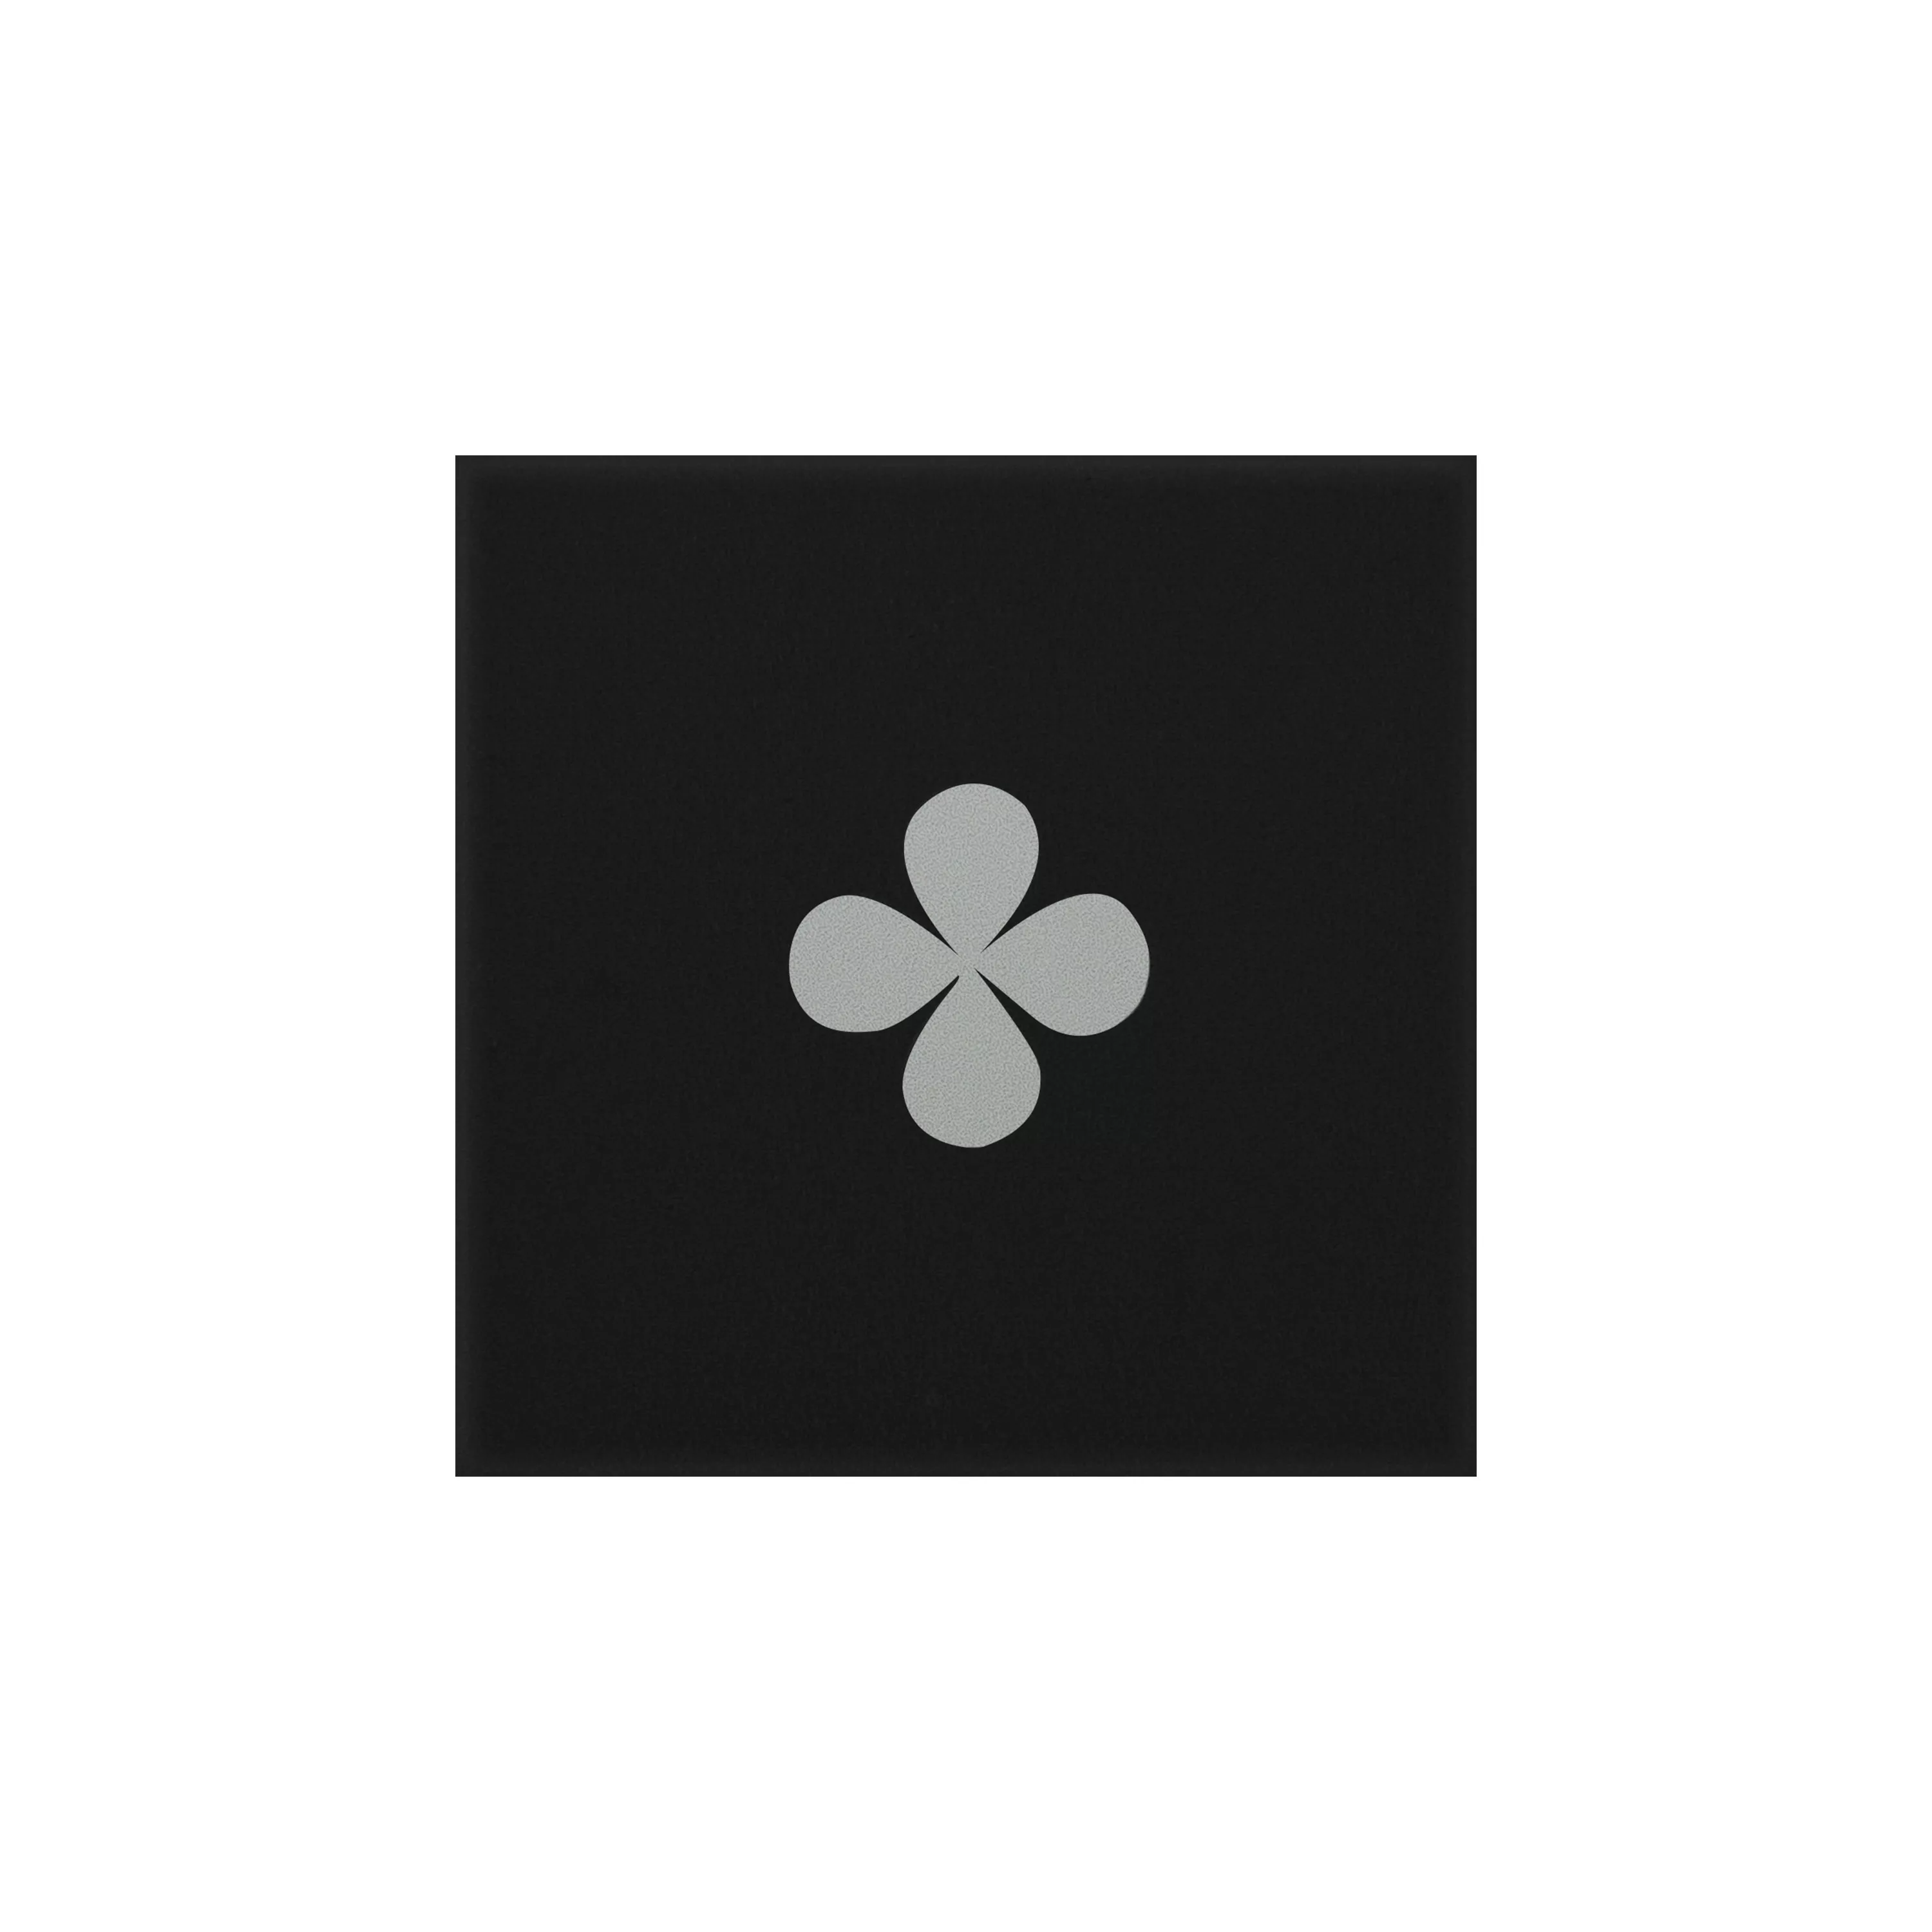 Порцеланови Kаменинови Изделия Плочки Genexia Черно Бяло Decor 1 Розоне  4,6x4,6cm